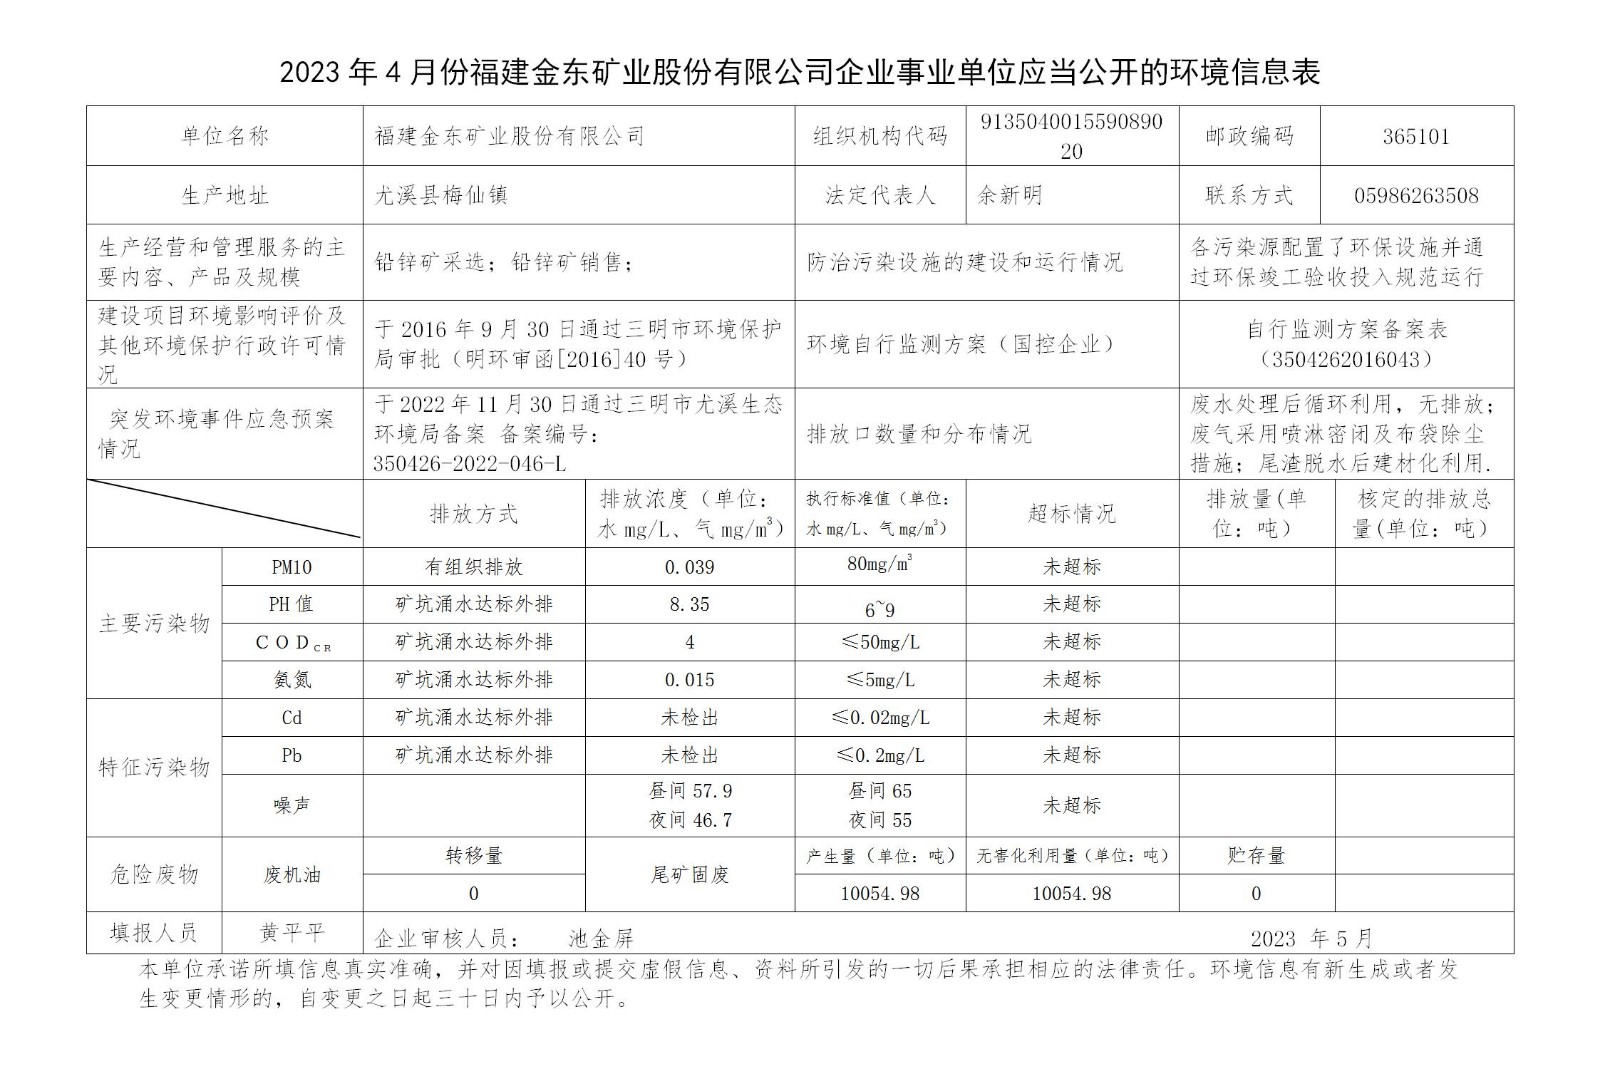 2023年4月份bat365在线官网登录(中国)有限公司企业事业单位应当公开的环境信息表_01.jpg